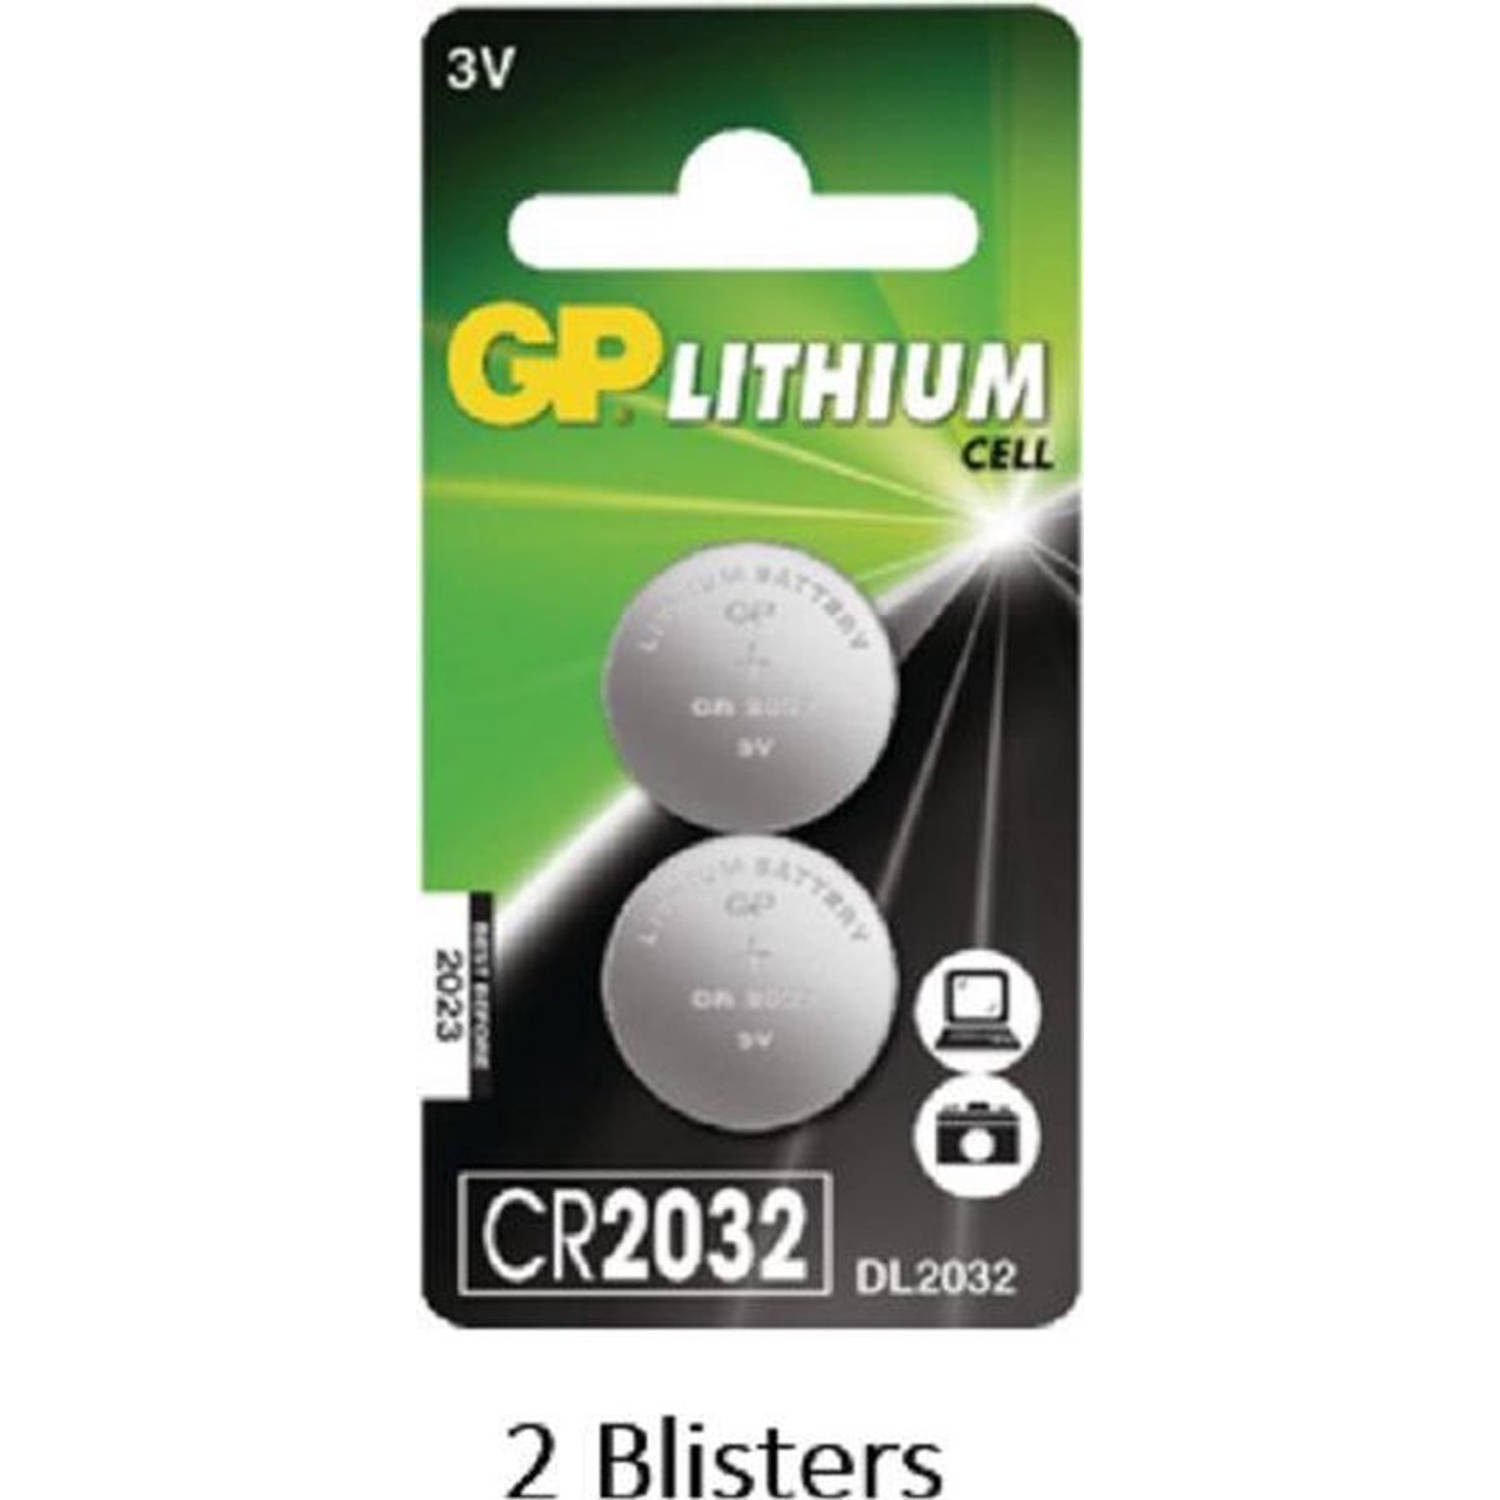 4 stuks (2 blisters a 2 stuks) GP Lithium Cell CR2032 batterij 3V